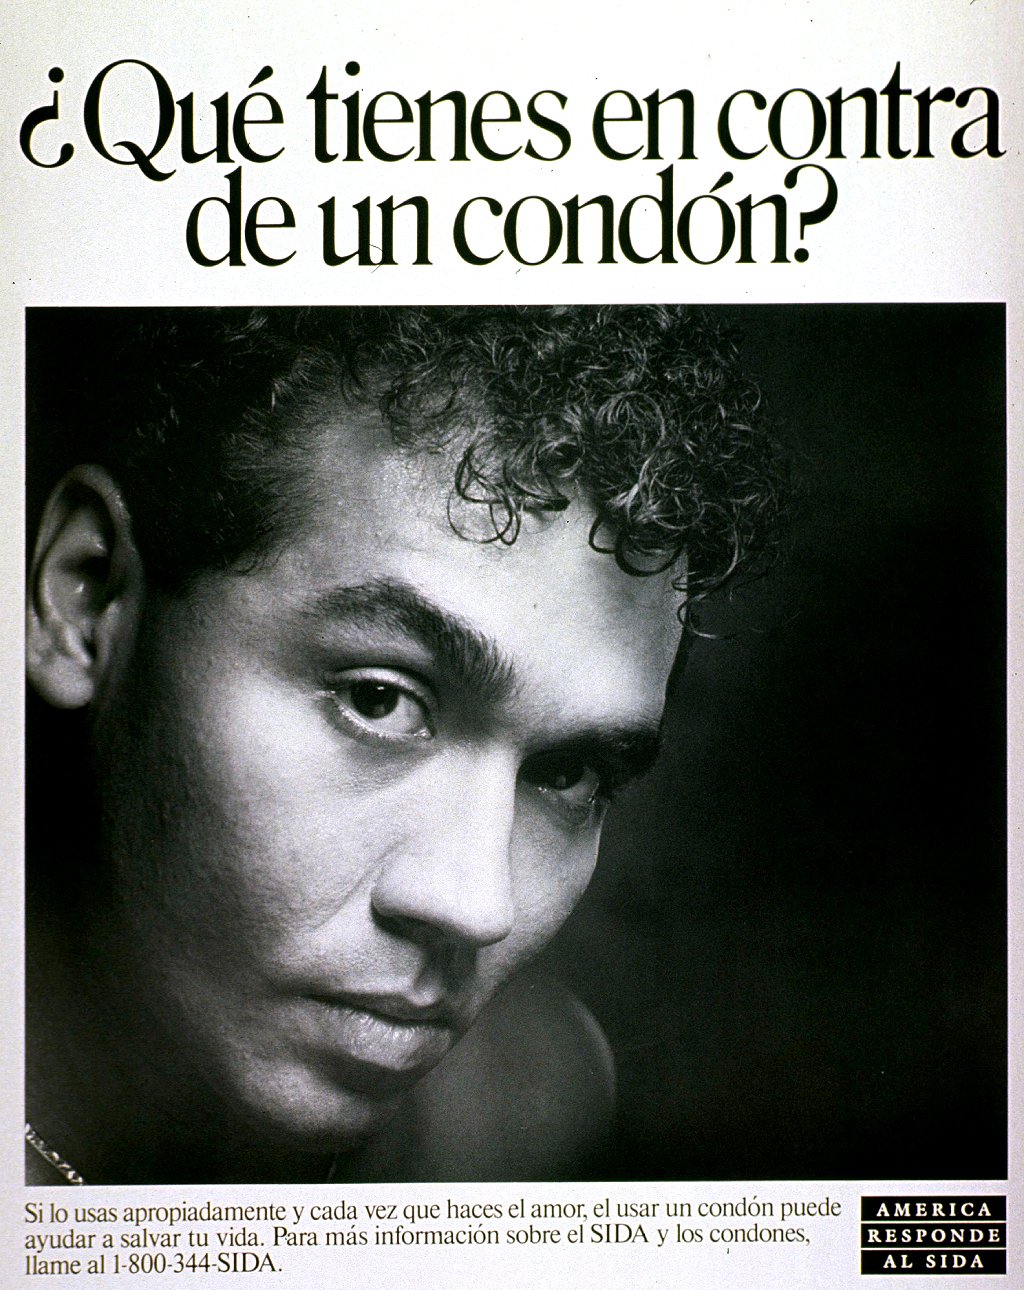 Póster en español de campaña contra el sida en EE.UU.